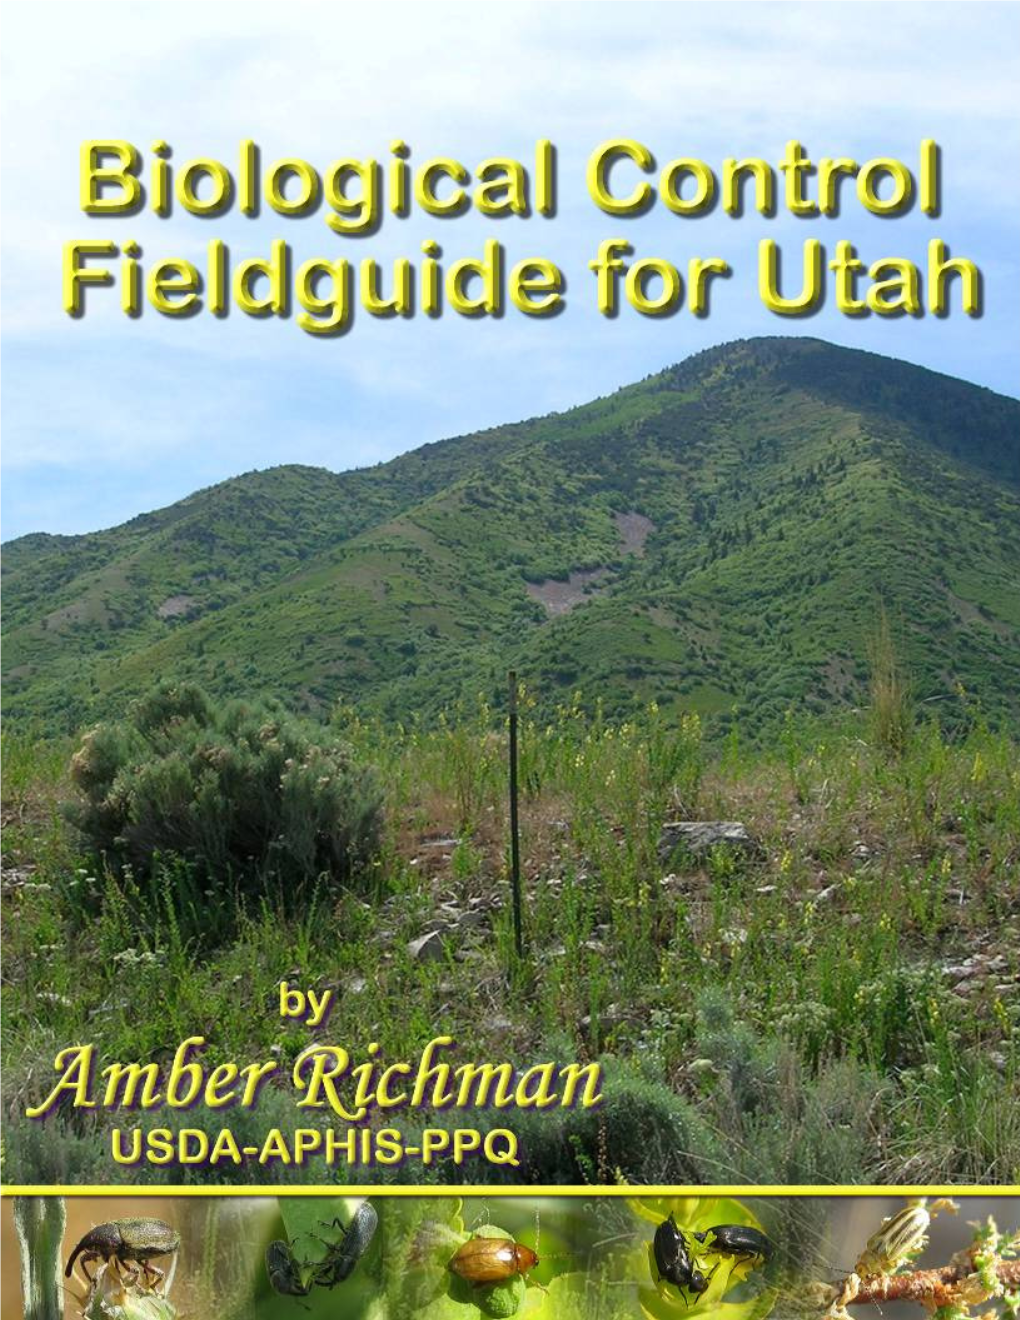 Biocontrol Field Guide for Utah